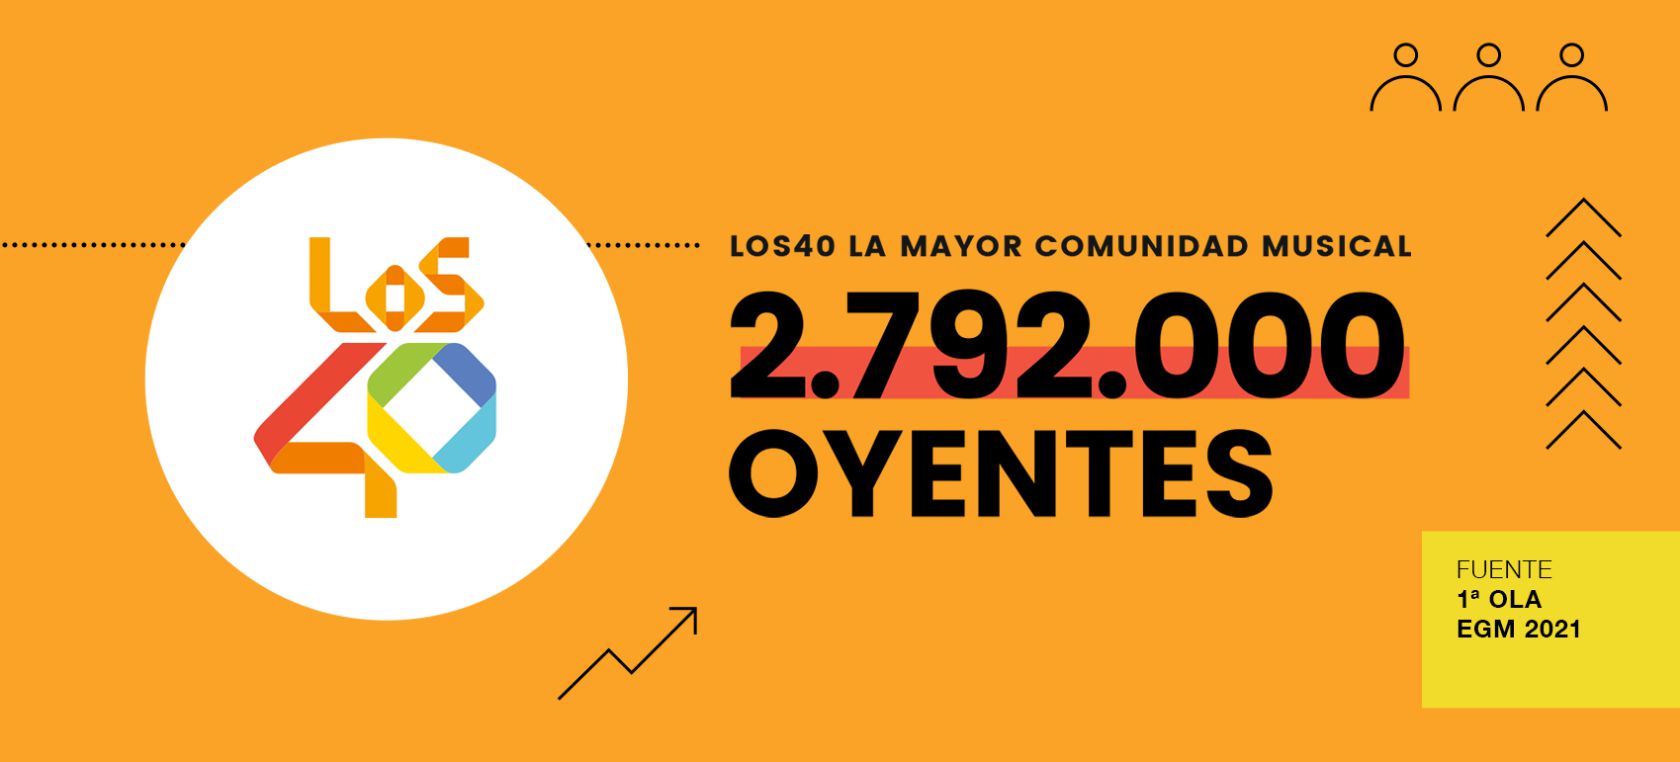 LOS40, la mayor comunidad musical de España, con 2.792.000 oyentes